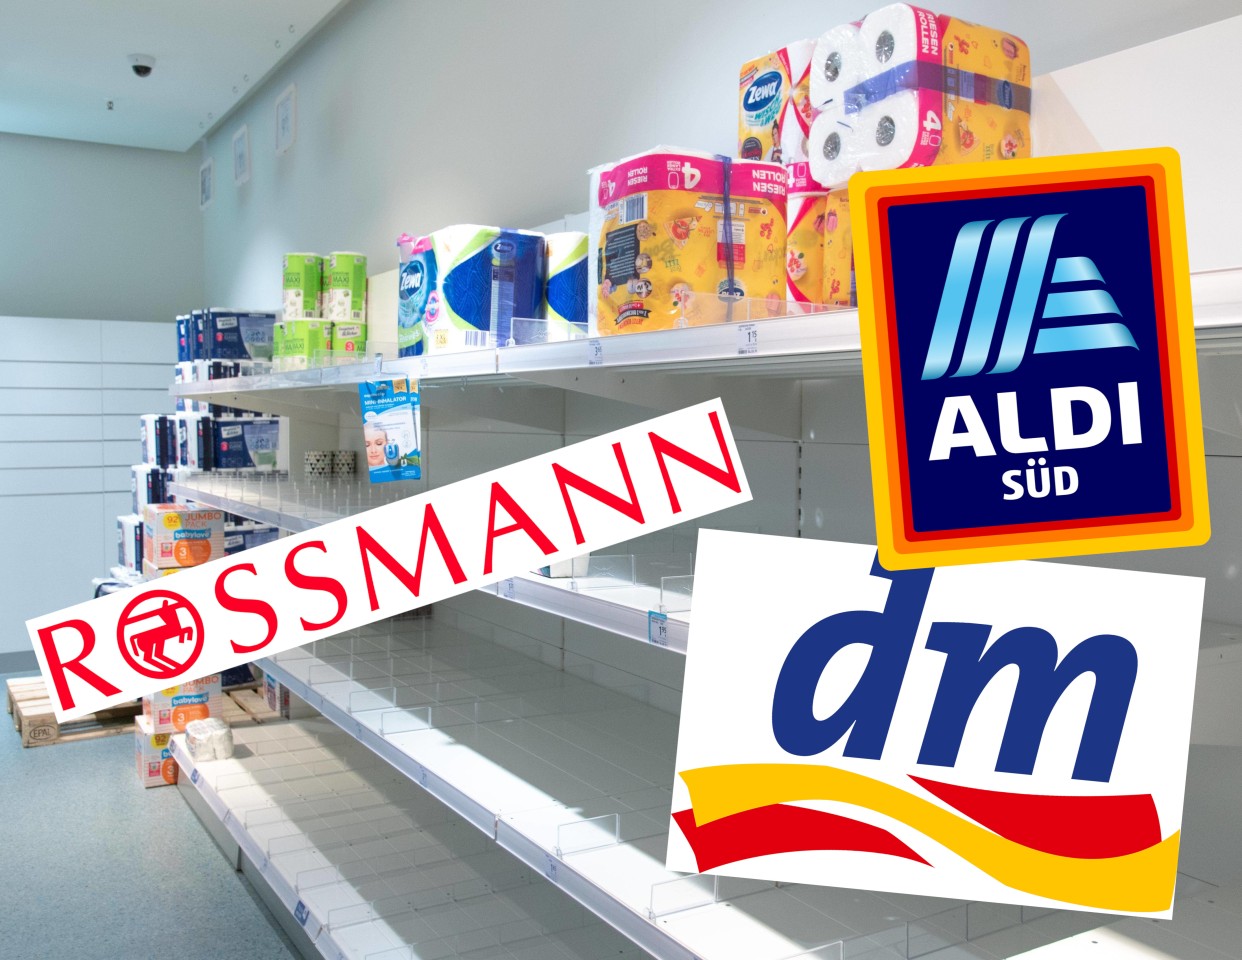 Bei Rossmann, dm, Aldi und Co. könnte ein wichtiges Produkt bald deutlich teurer werden. (Symbolbild)